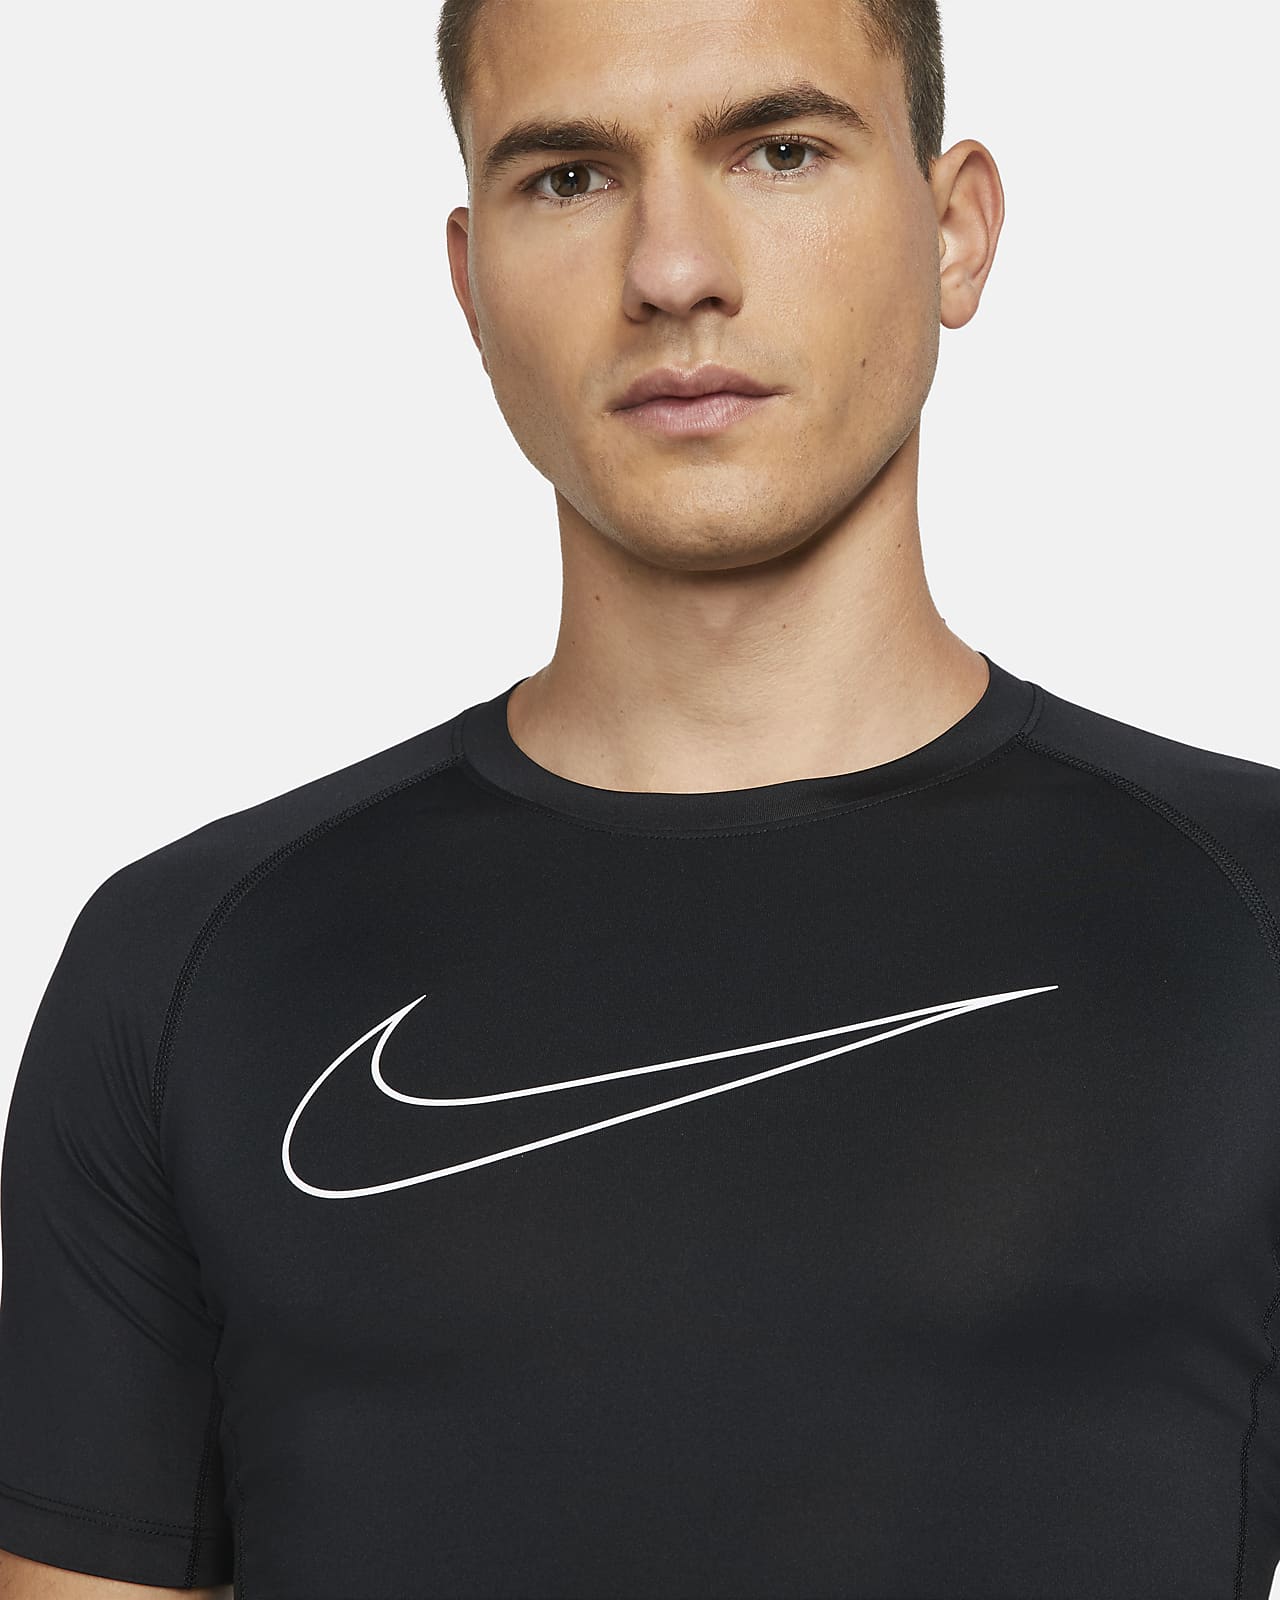 Melbourne vloek Virus Męska koszulka z krótkim rękawem o przylegającym kroju Nike Pro Nike Pro  Dri-FIT. Nike PL